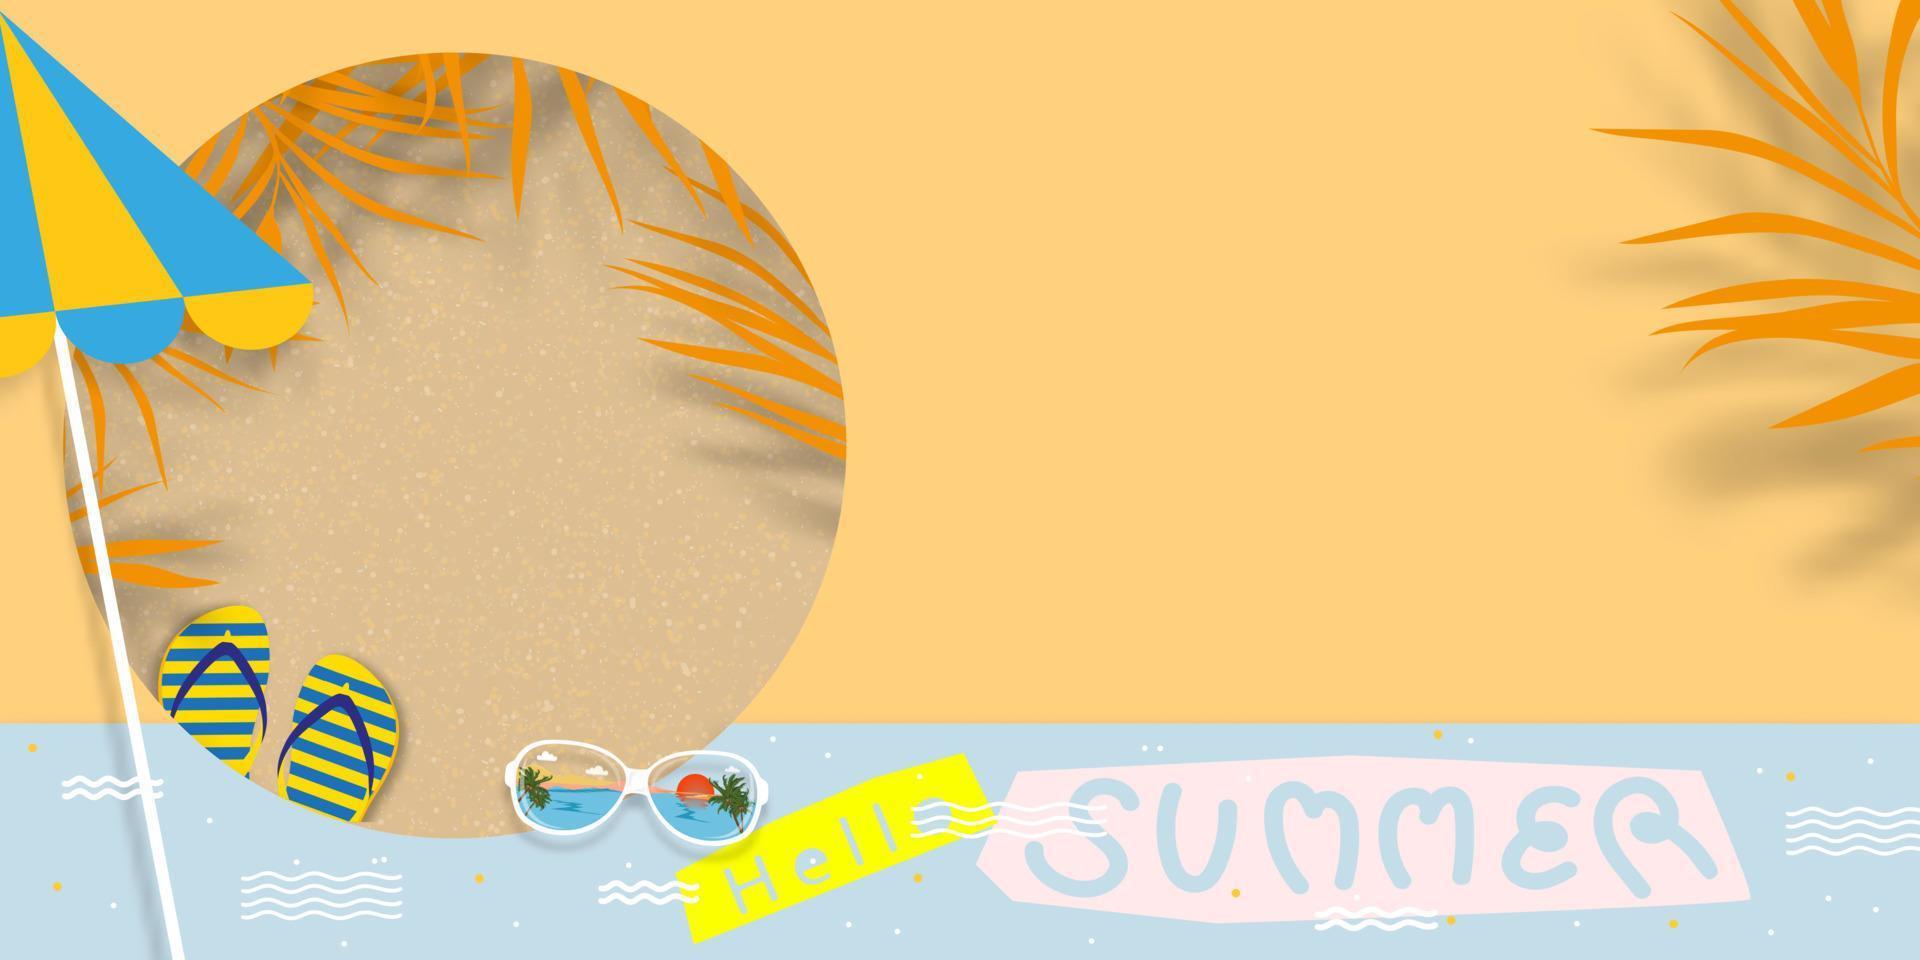 zomer tafereel achtergrond, vector papier besnoeiing tropisch zomer met kokosnoot bladeren, zonnebrillen, sandaal, paraplu. vlak leggen palm blad Aan geel zand strand achtergrond concept voor vakantie, reizen, verkoop, promotie